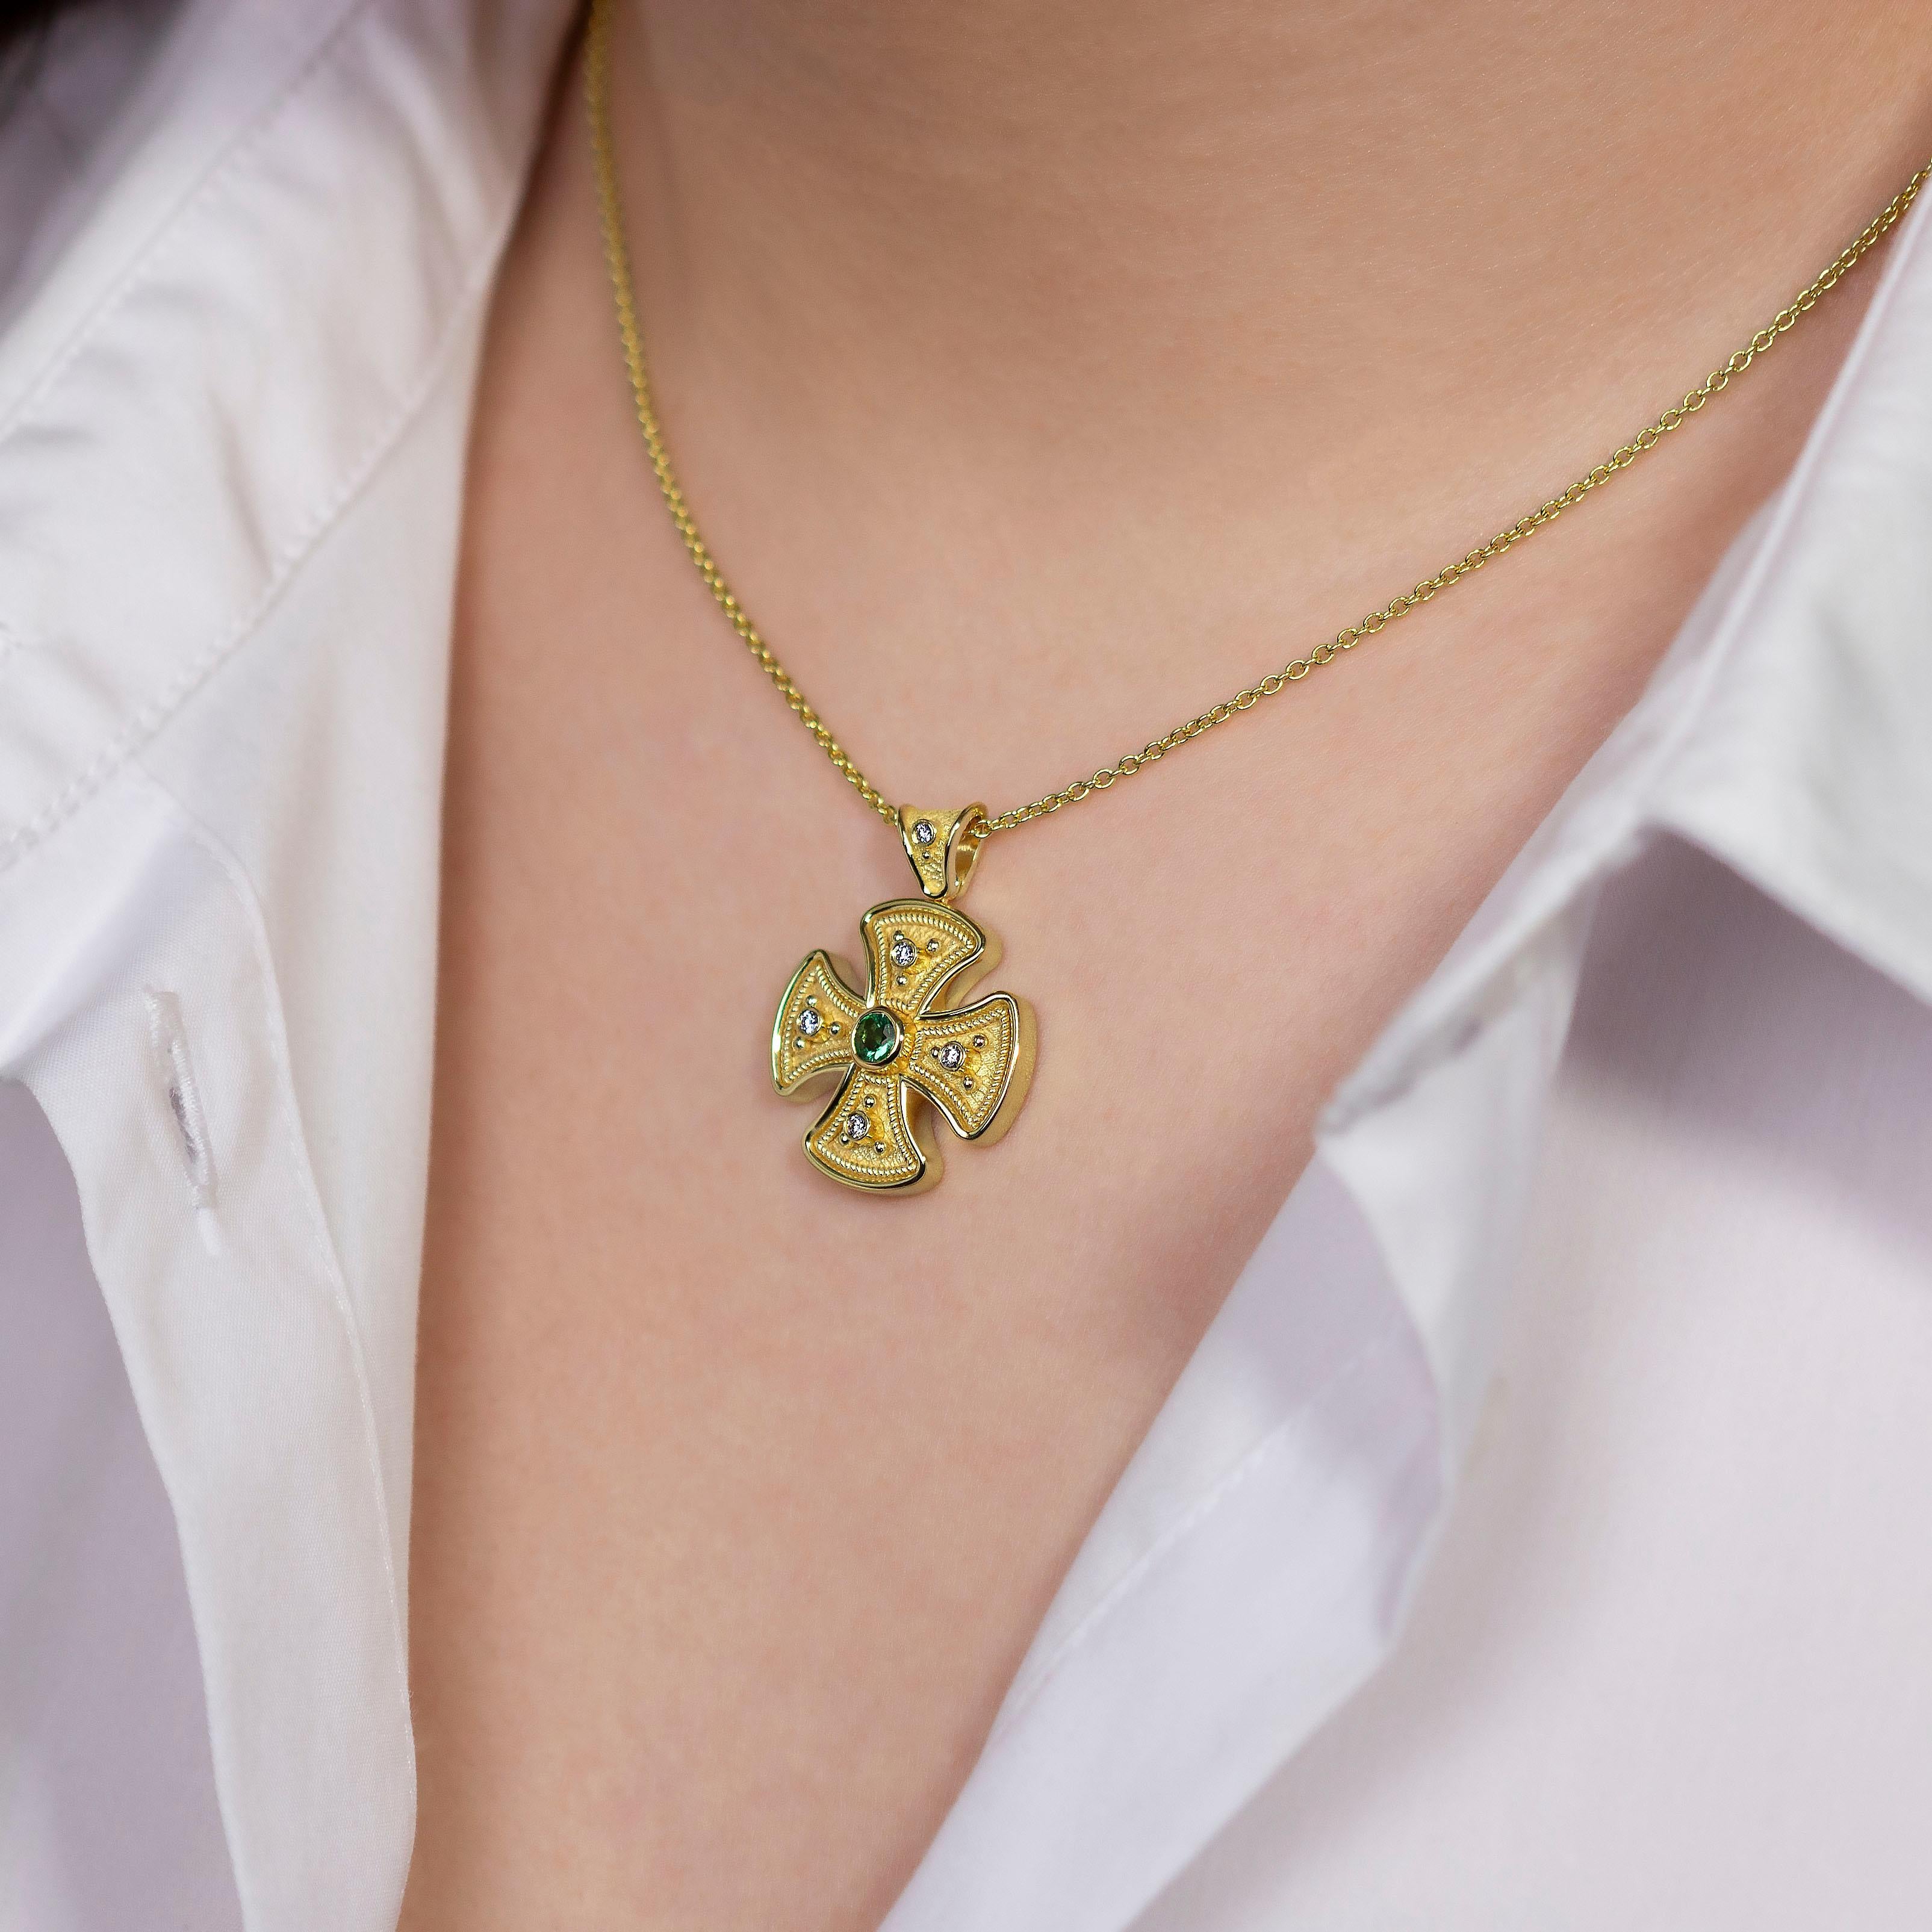 Im Herzen unseres Kreuzanhängers aus Rundgold steht ein Smaragd mit seinem bezaubernden Grünton im Mittelpunkt, umgeben von einer brillanten Diamantenkonstellation - ein strahlendes Symbol des Glaubens und der zeitlosen Eleganz, das die üppige